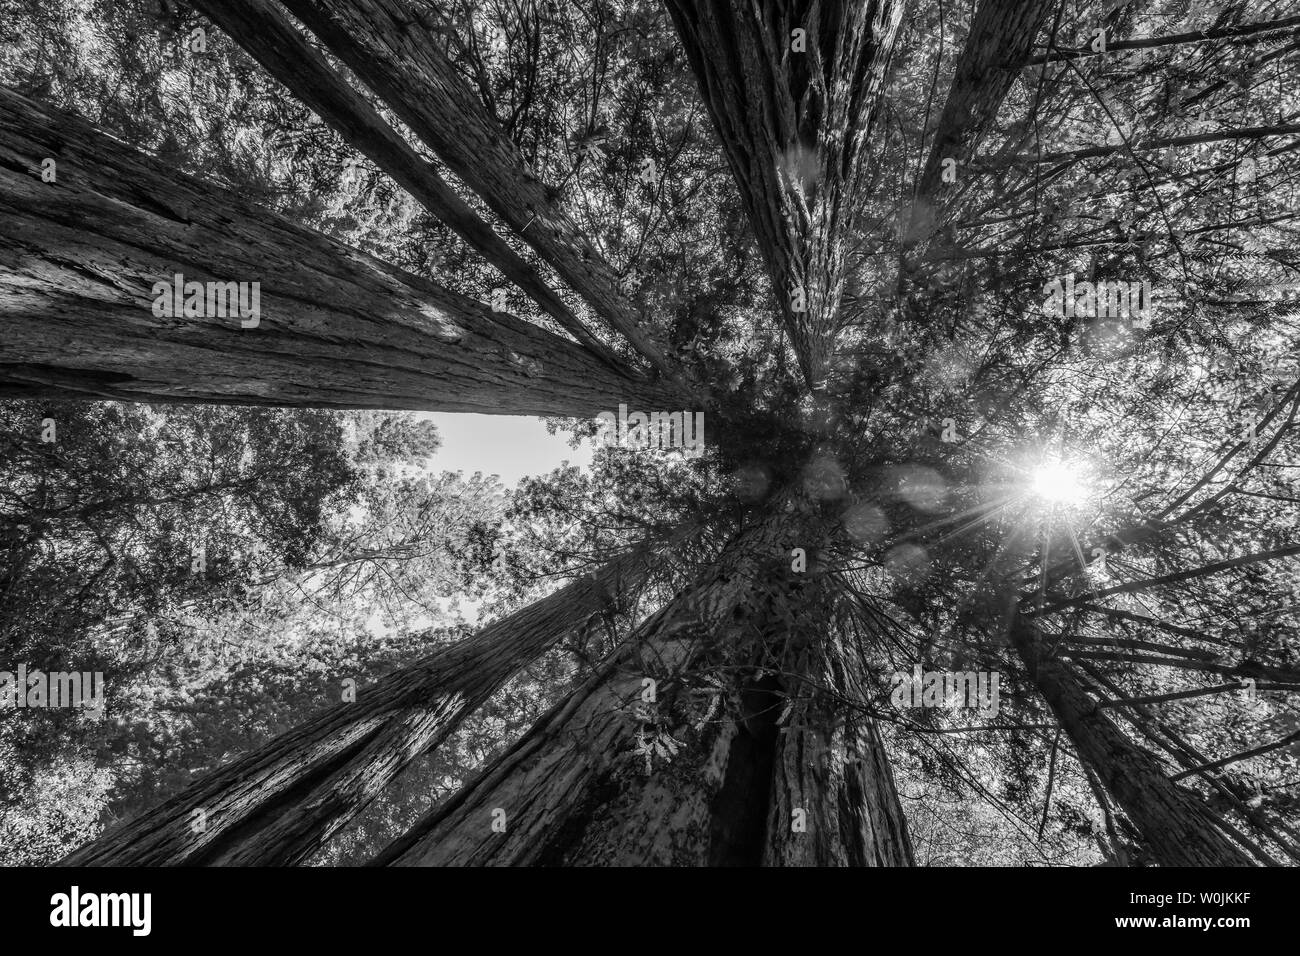 Sun Star Strahlen Grün hoch aufragenden Redwoods National Park Newton B Drury Antrieb Crescent City in Kalifornien. Die höchsten Bäume der Welt, 1000 Jahre alte, Größe la Stockfoto